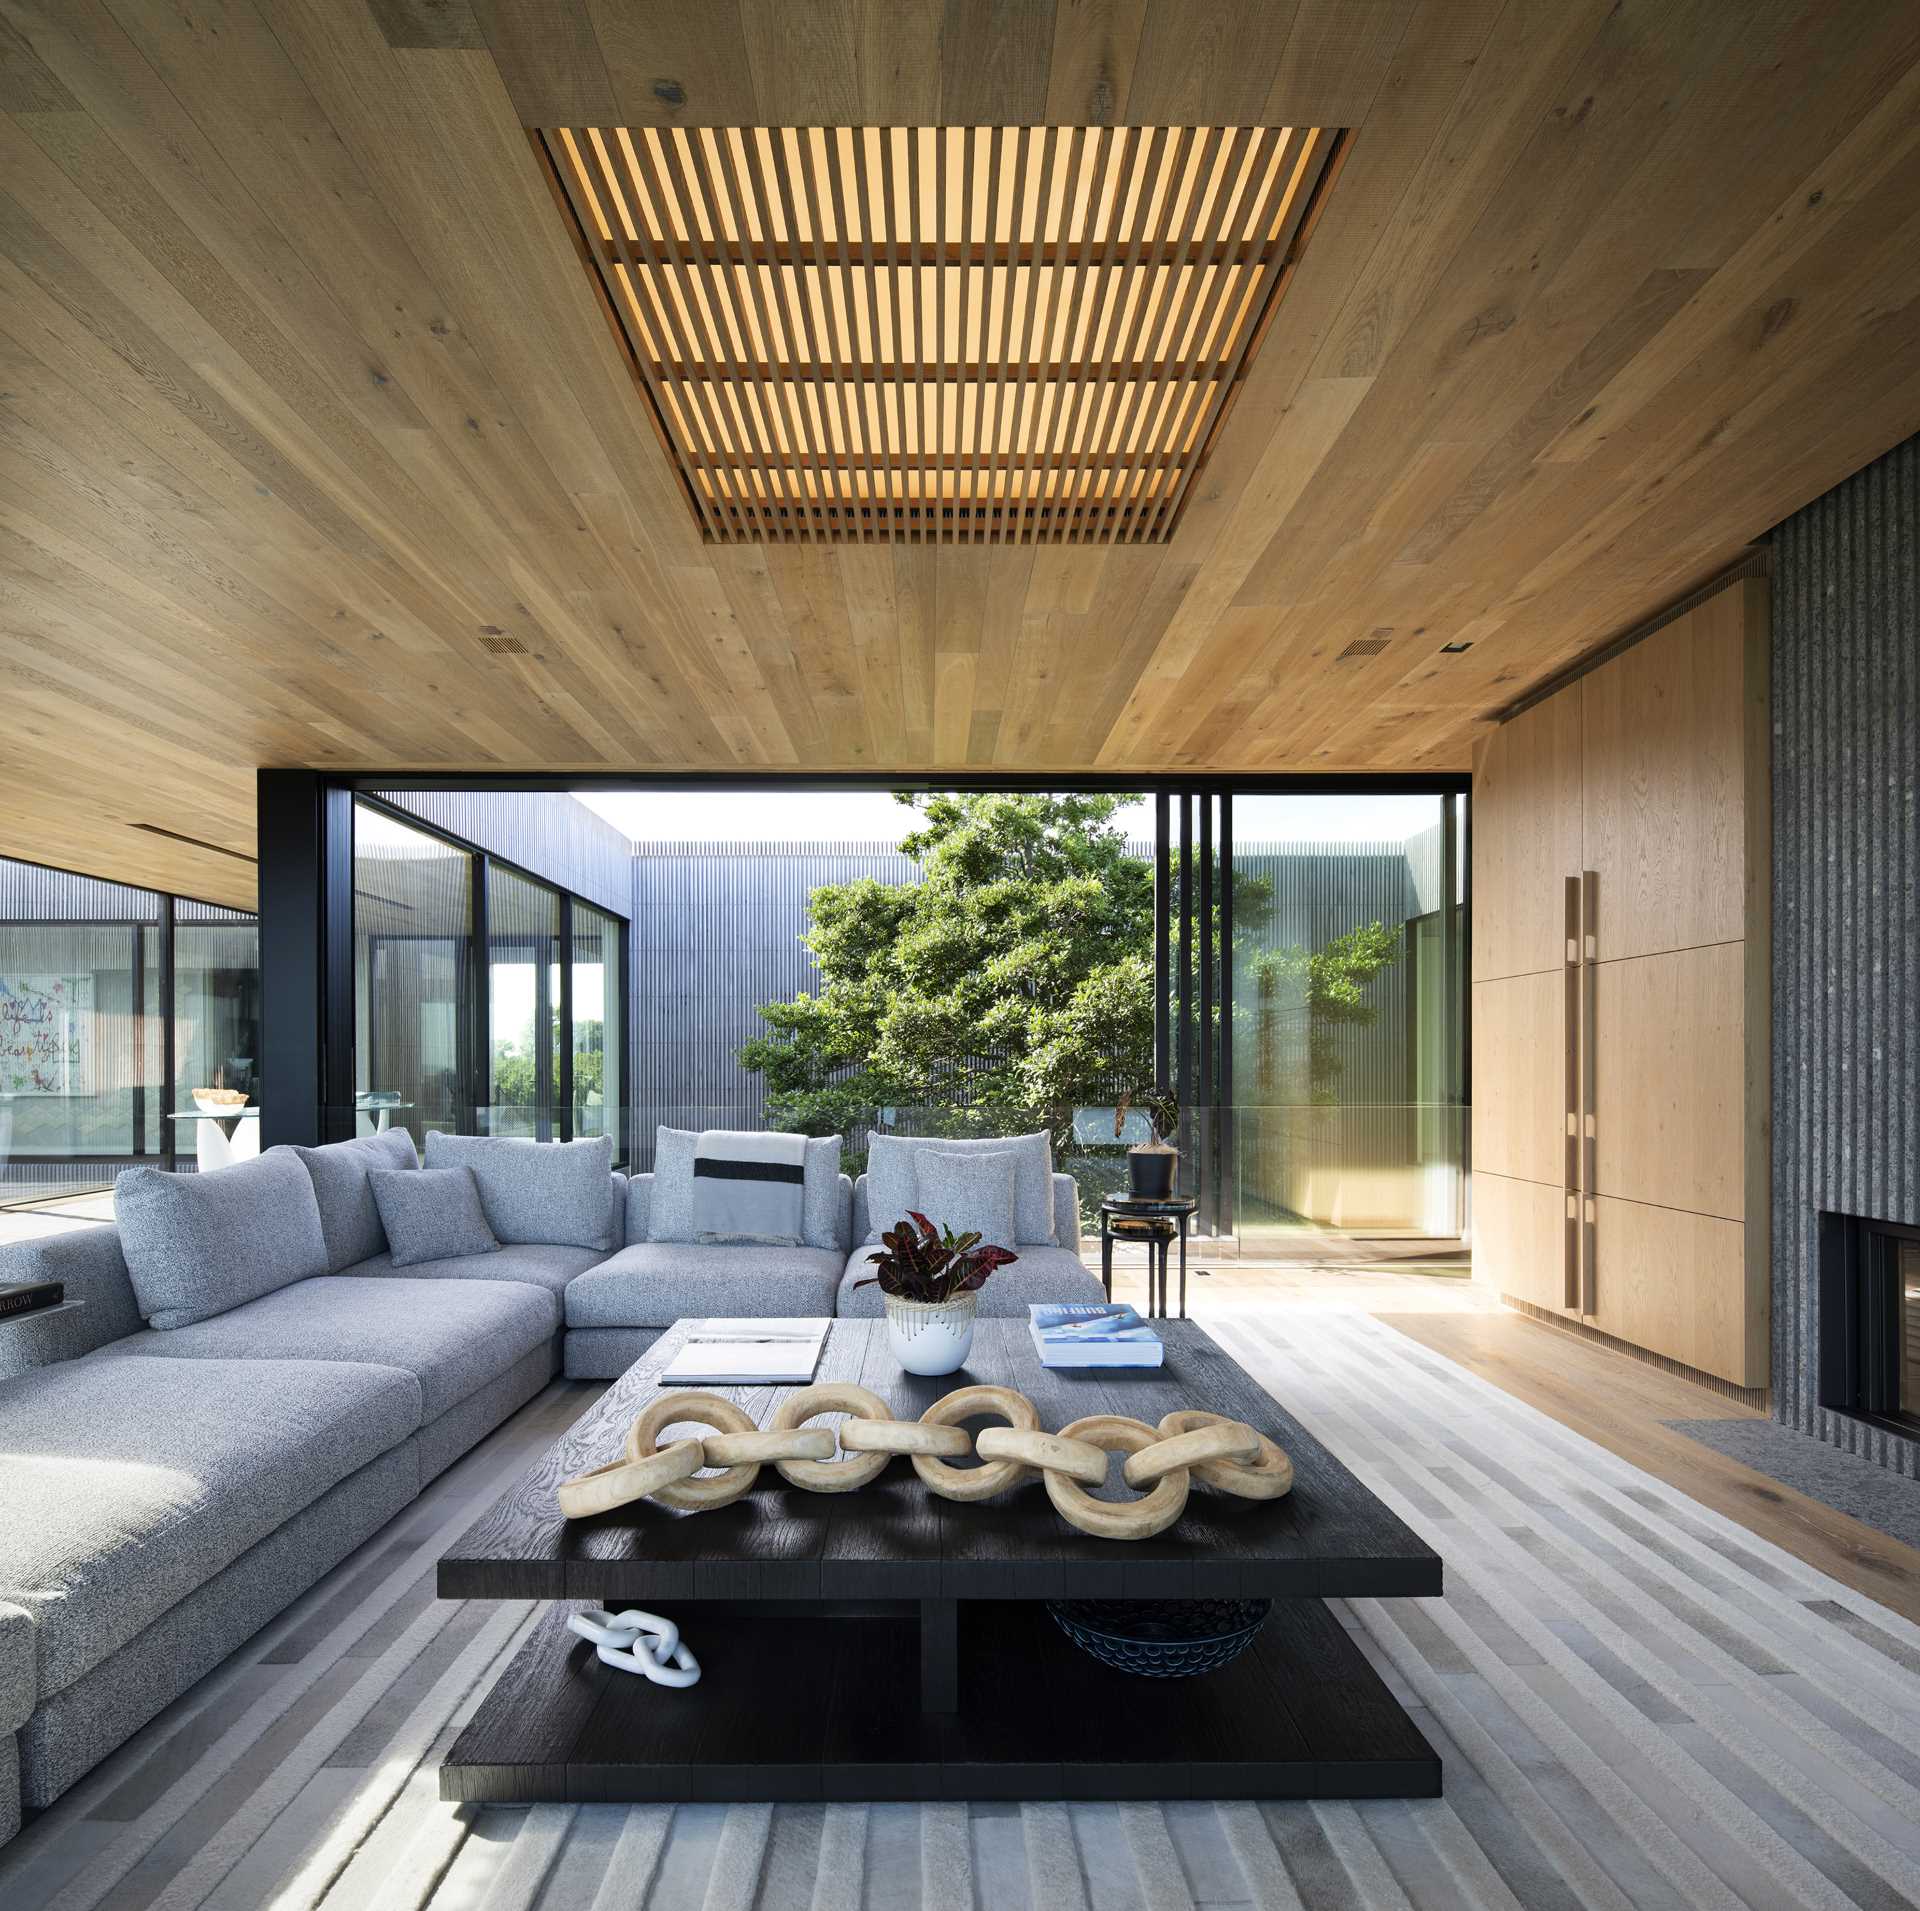 Livingul acestei case moderne include un tavan din lemn cu pereți mari de sticlă glisanți, în timp ce balustradele de sticlă oferă o vedere neîntreruptă.